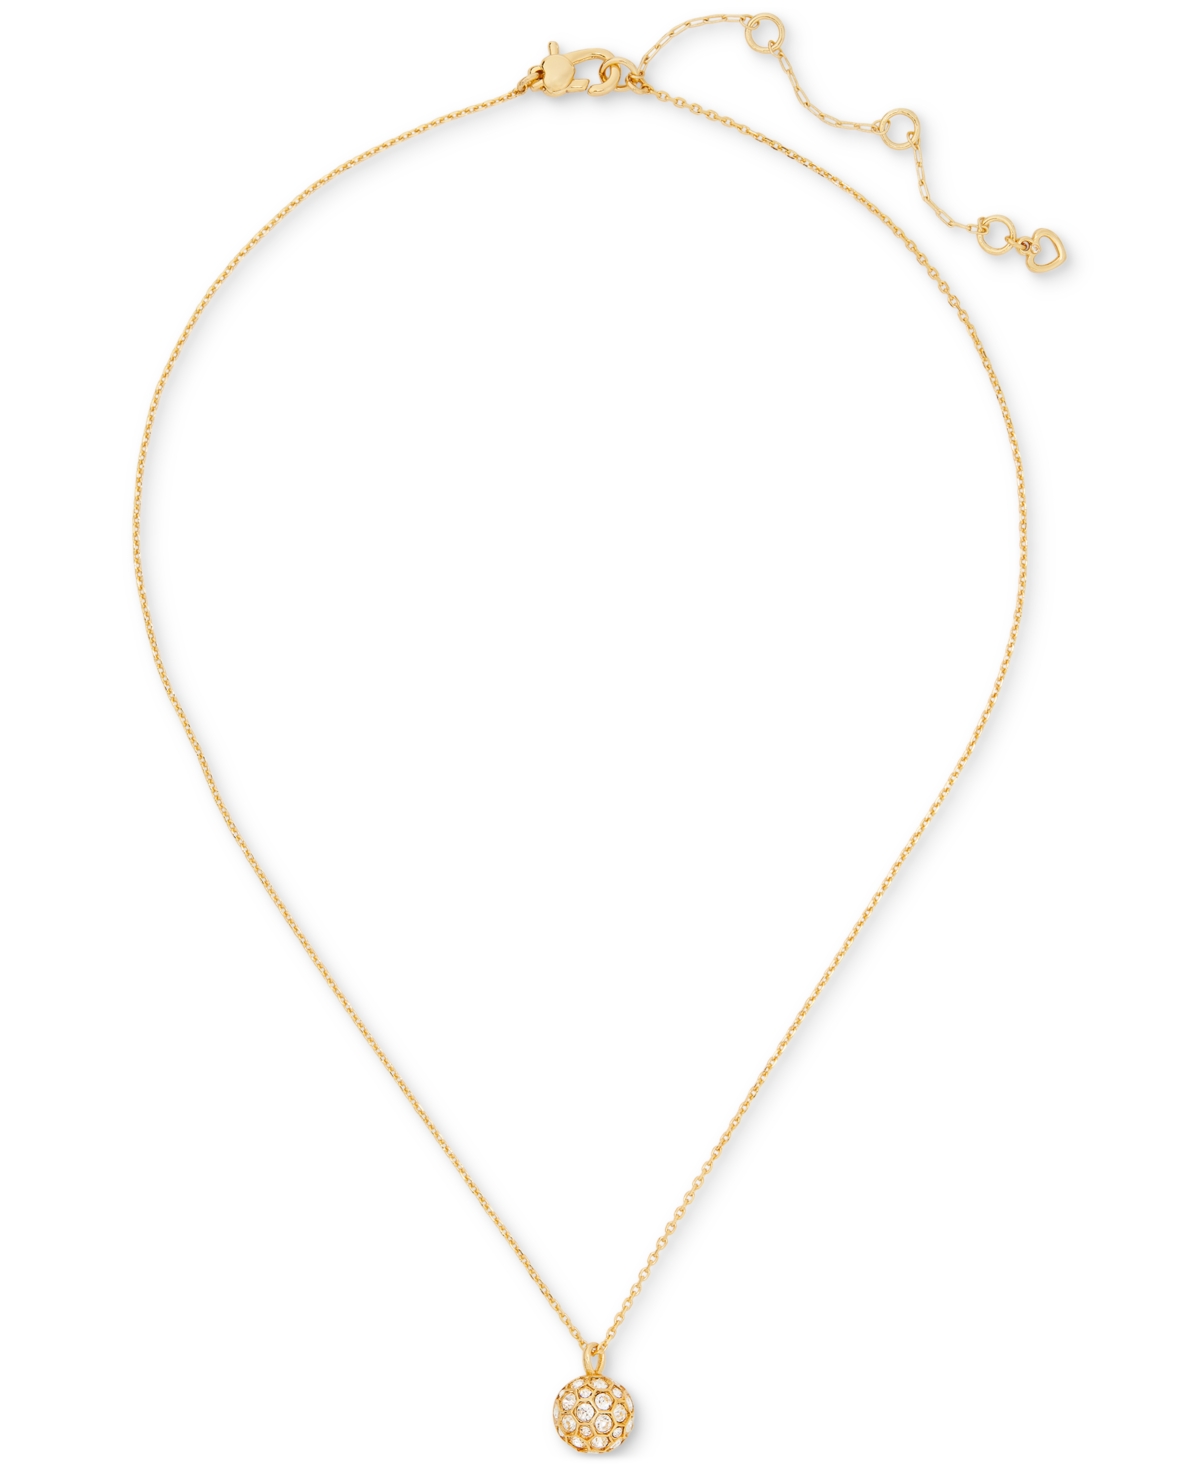 Gold-Tone Stone Orb Mini Pendant Necklace, 16" + 3" extender - Multi